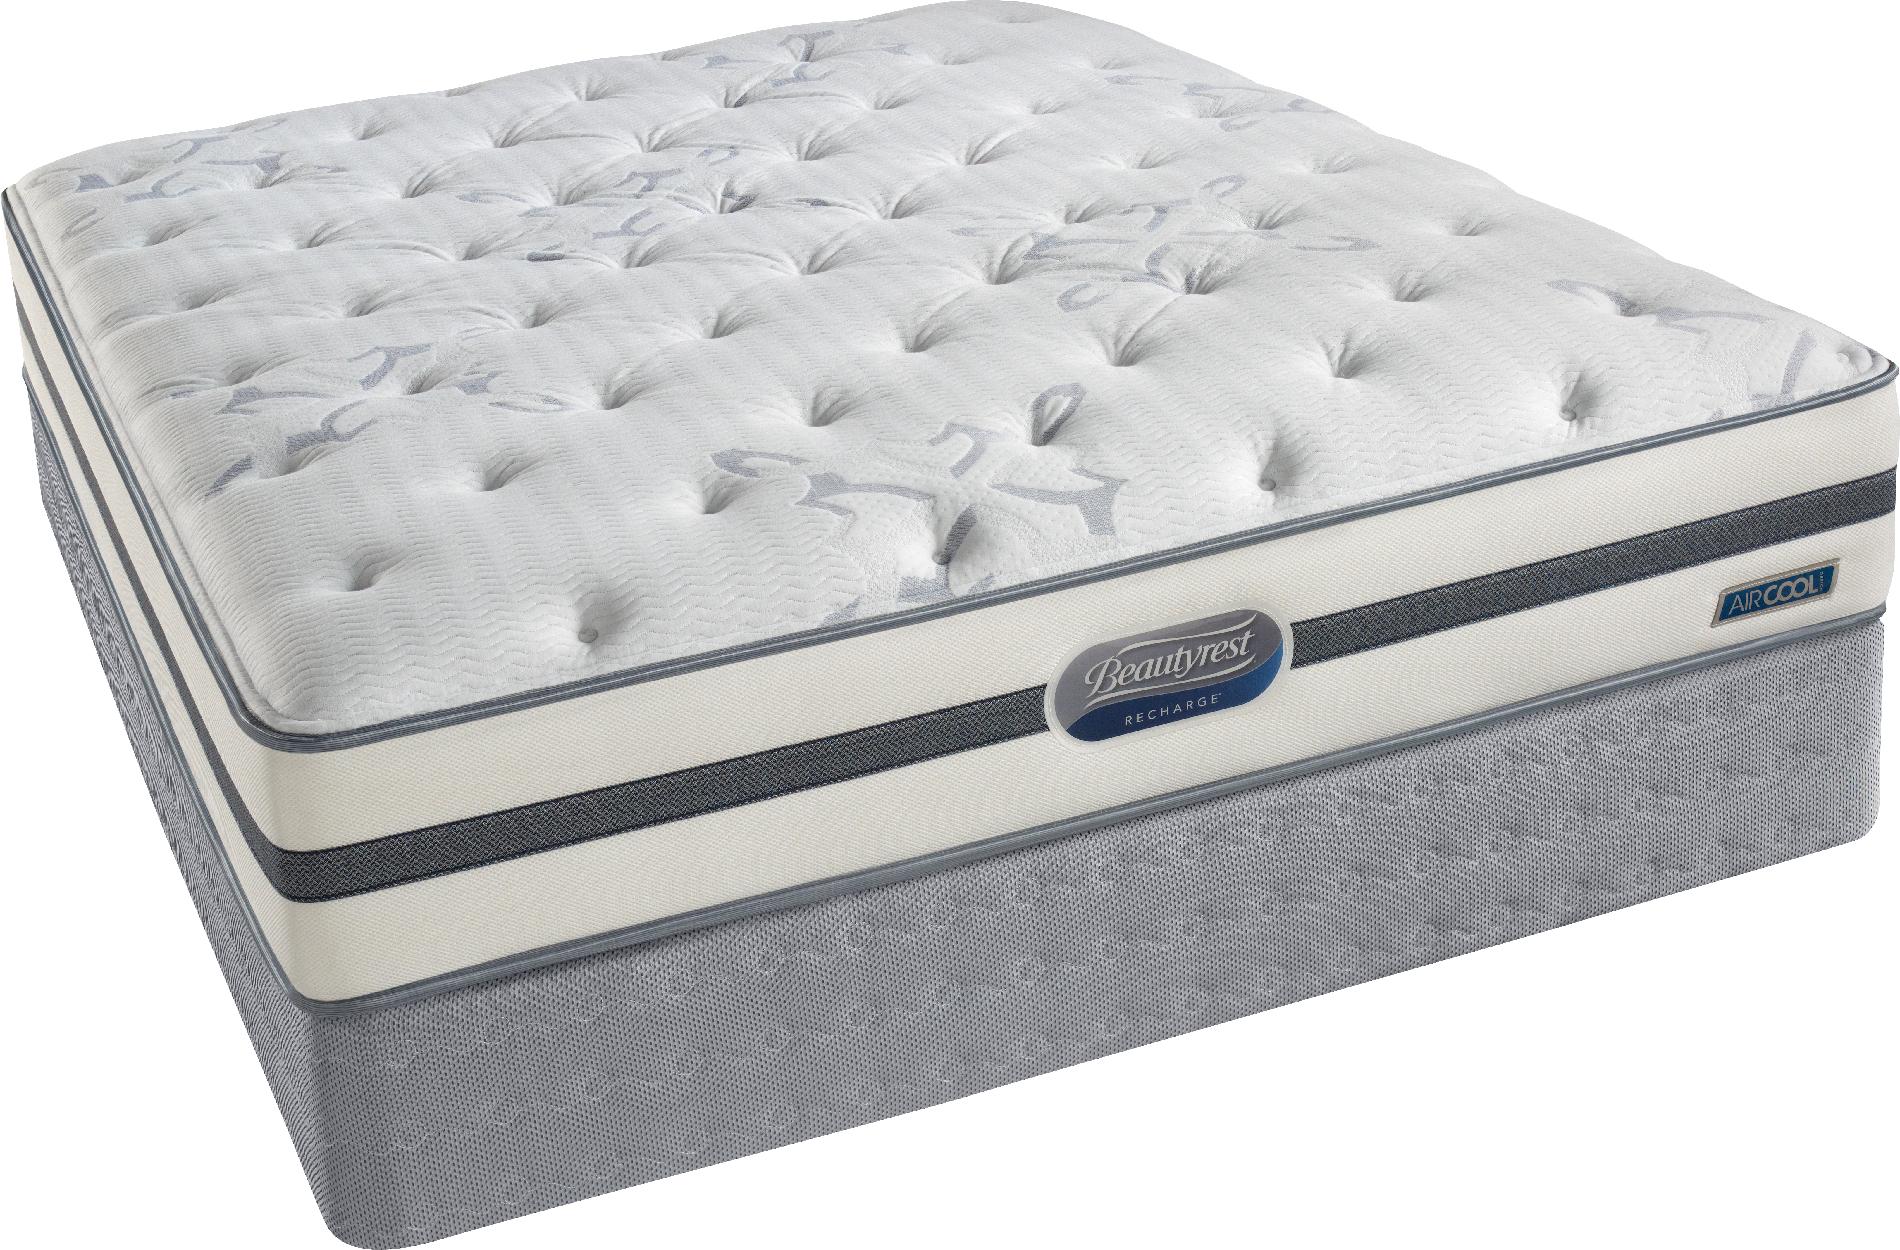 sears canada mattress reviews